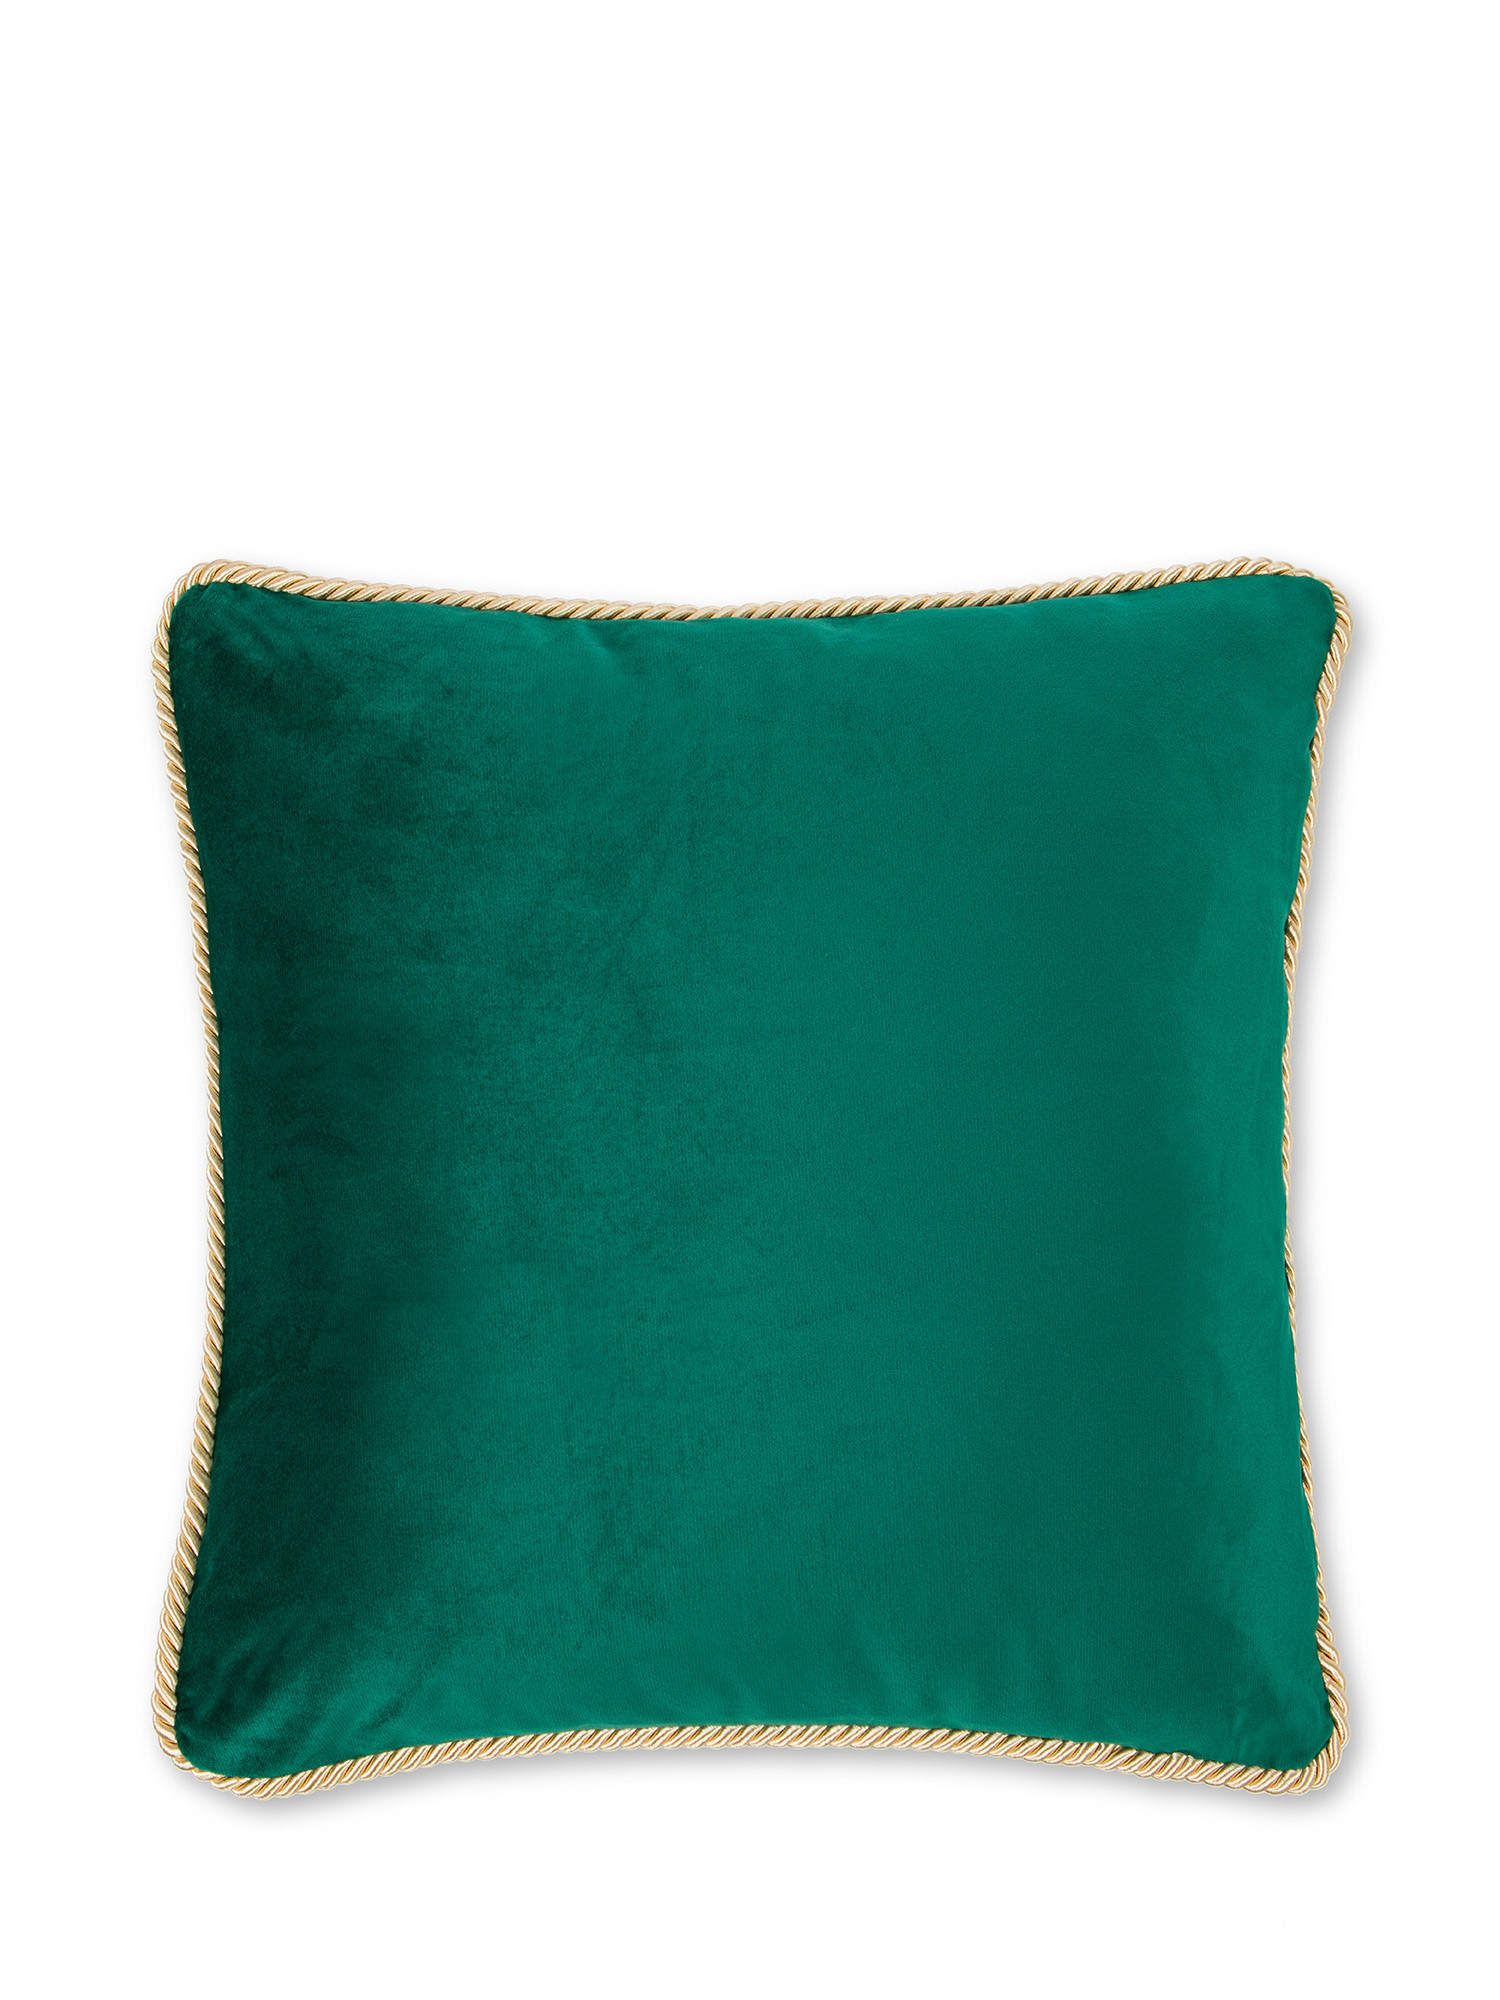 Cuscino velluto bicolore 45X45cm, Verde, large image number 1